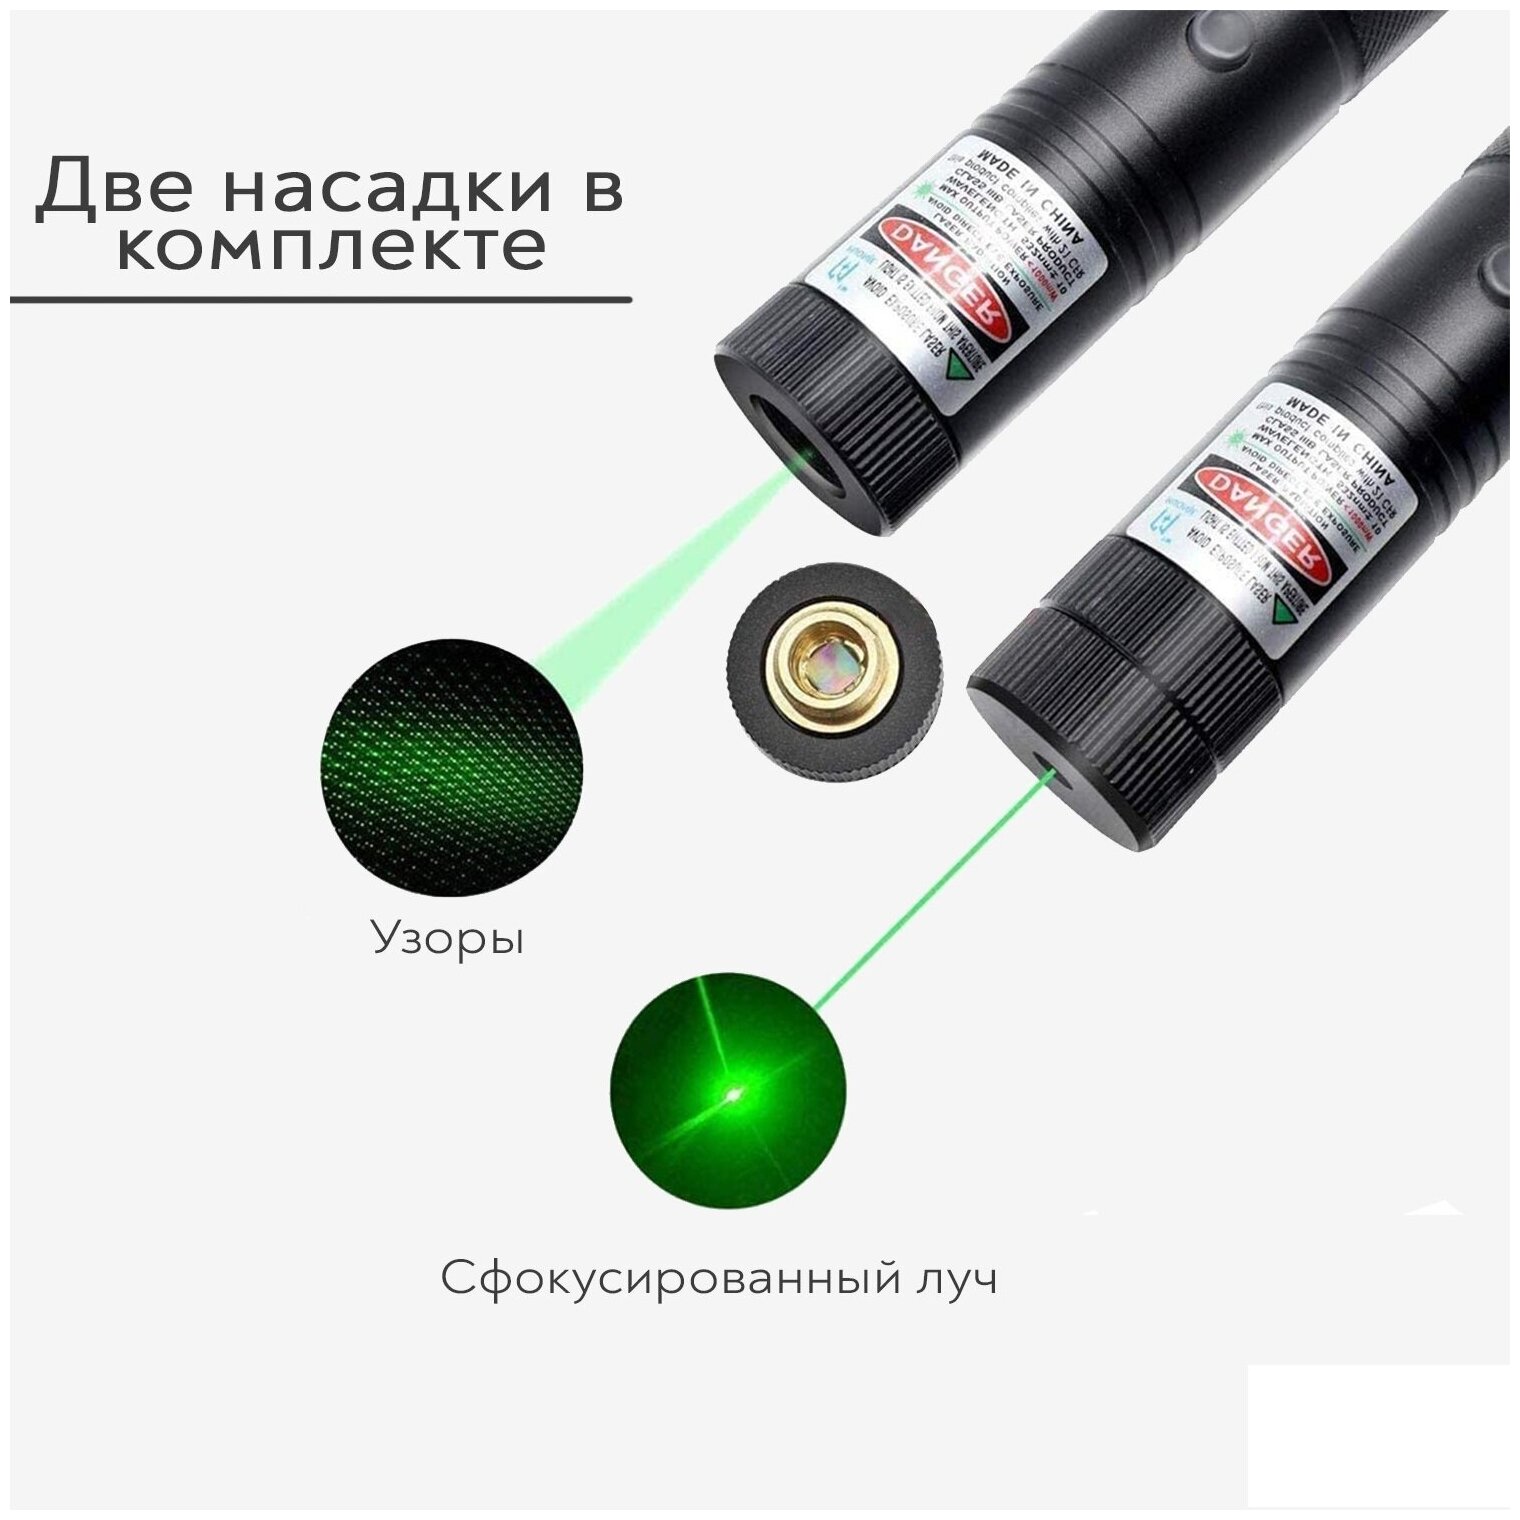 Лазерная указка SimpleShop мощная аккумуляторная с насадкой, диммером, зеленый луч для презентаций, конференций, для подачи сигнала и туризма